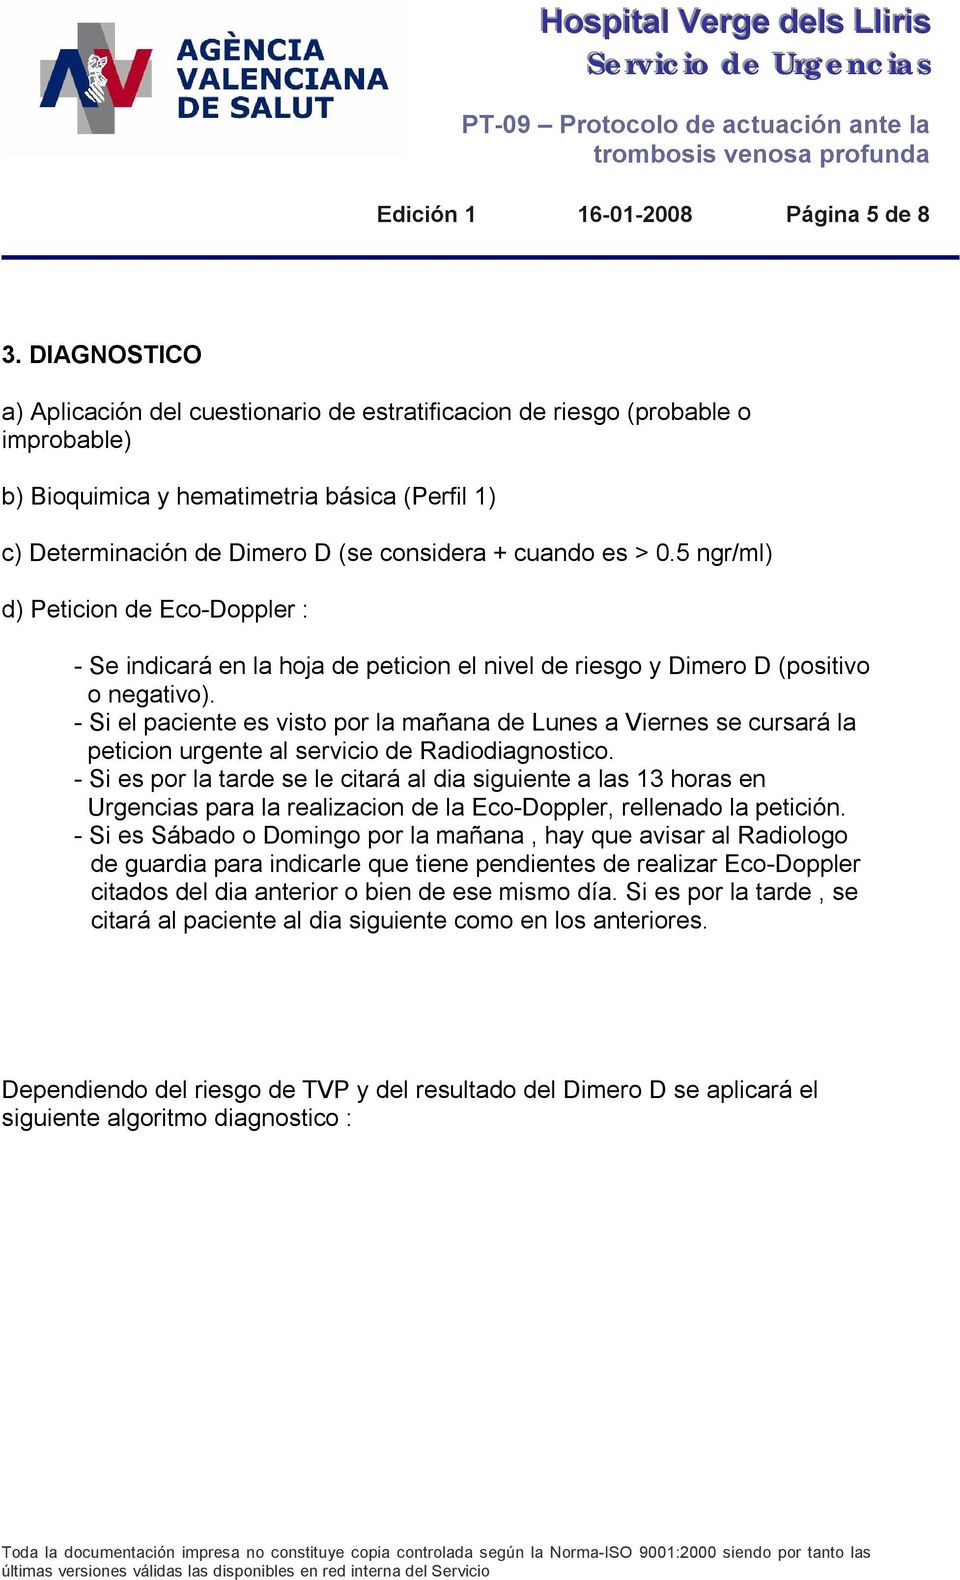 0.5 ngr/ml) d) Peticion de EcoDoppler : Se indicará en la hoja de peticion el nivel de riesgo y Dimero D (positivo o negativo).